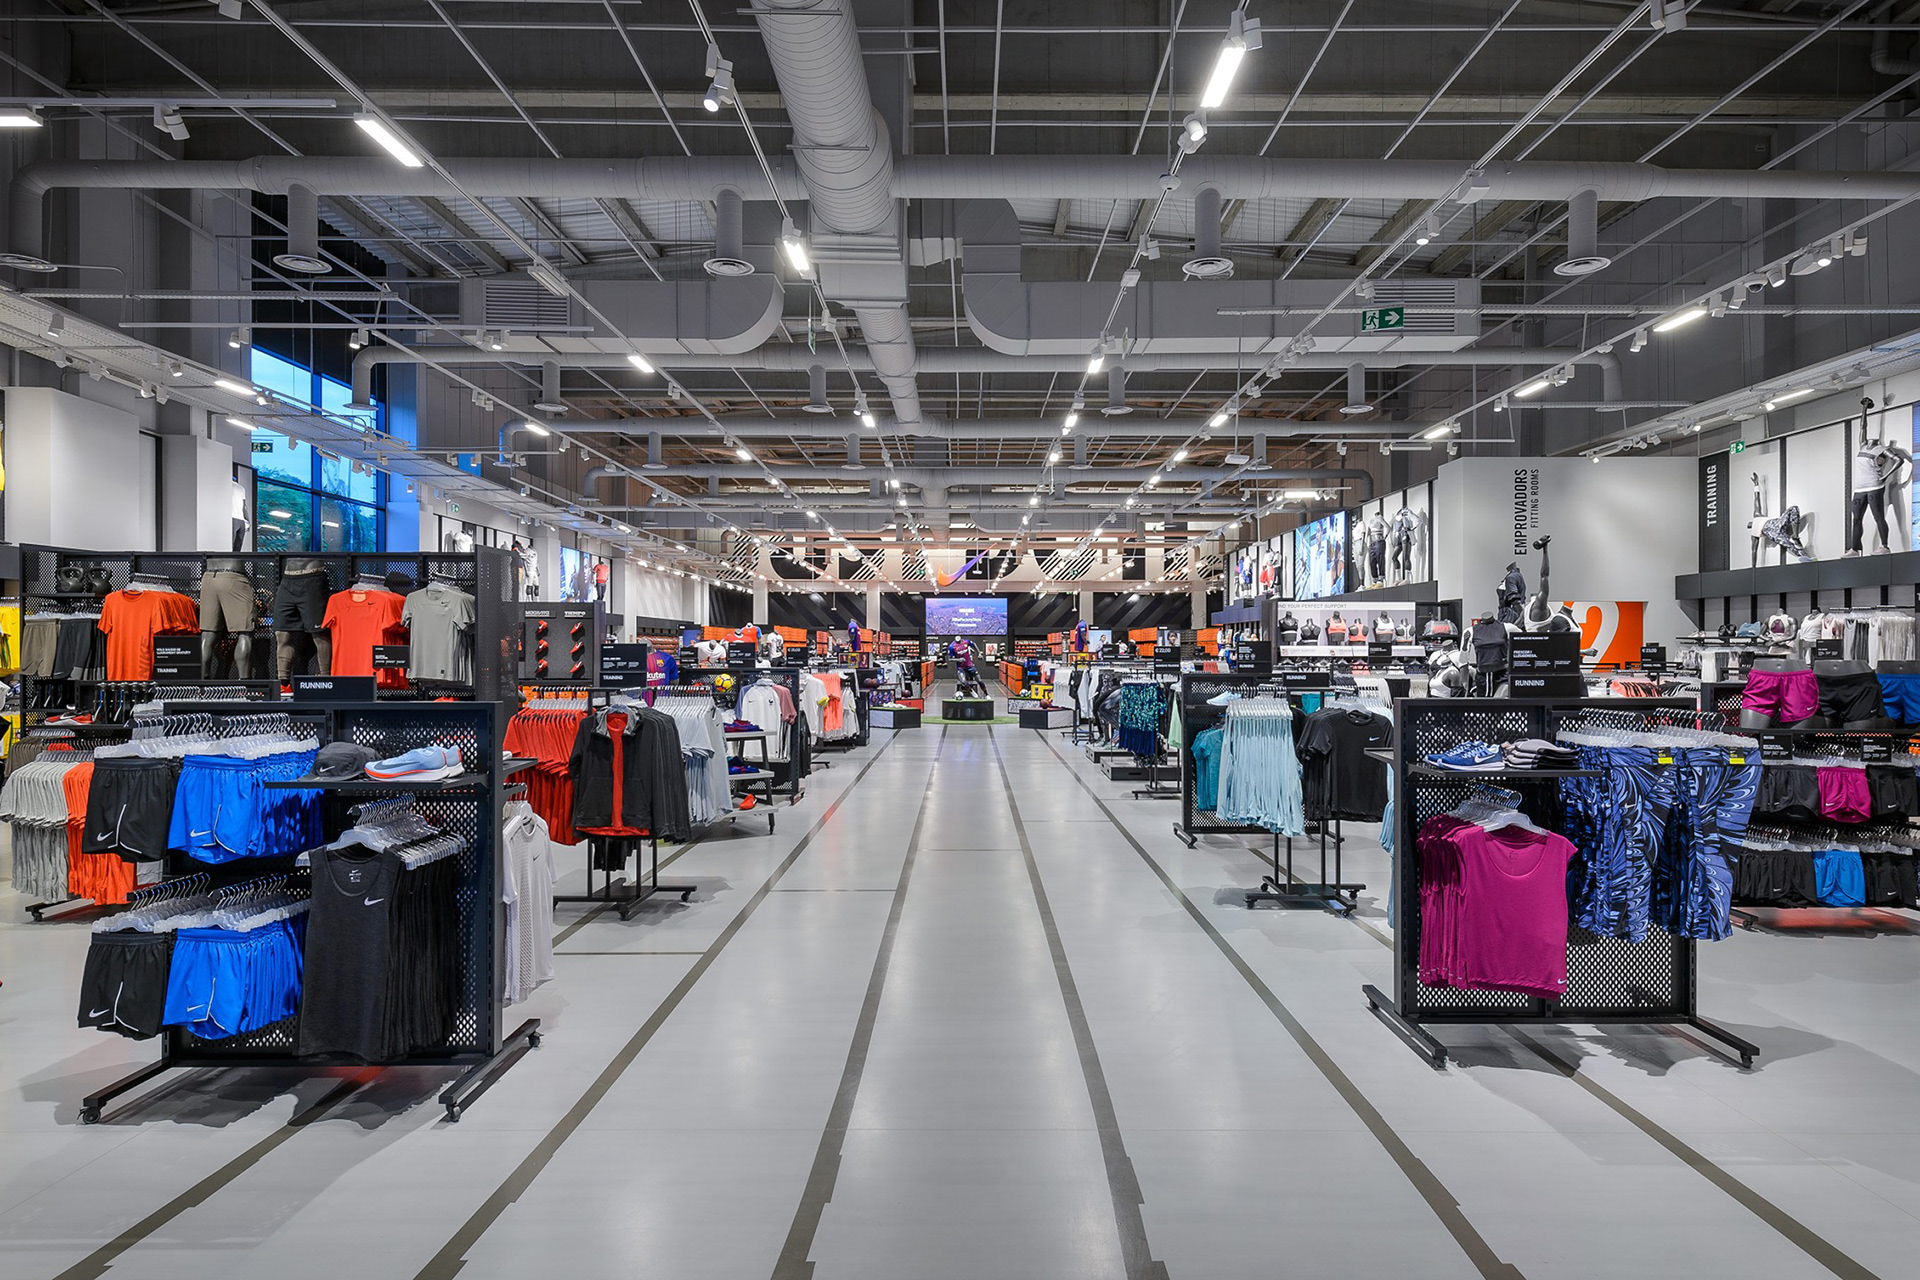 storm Kan weerstaan genie Leanna McAlpine - Nike Factory Store, Barcelona